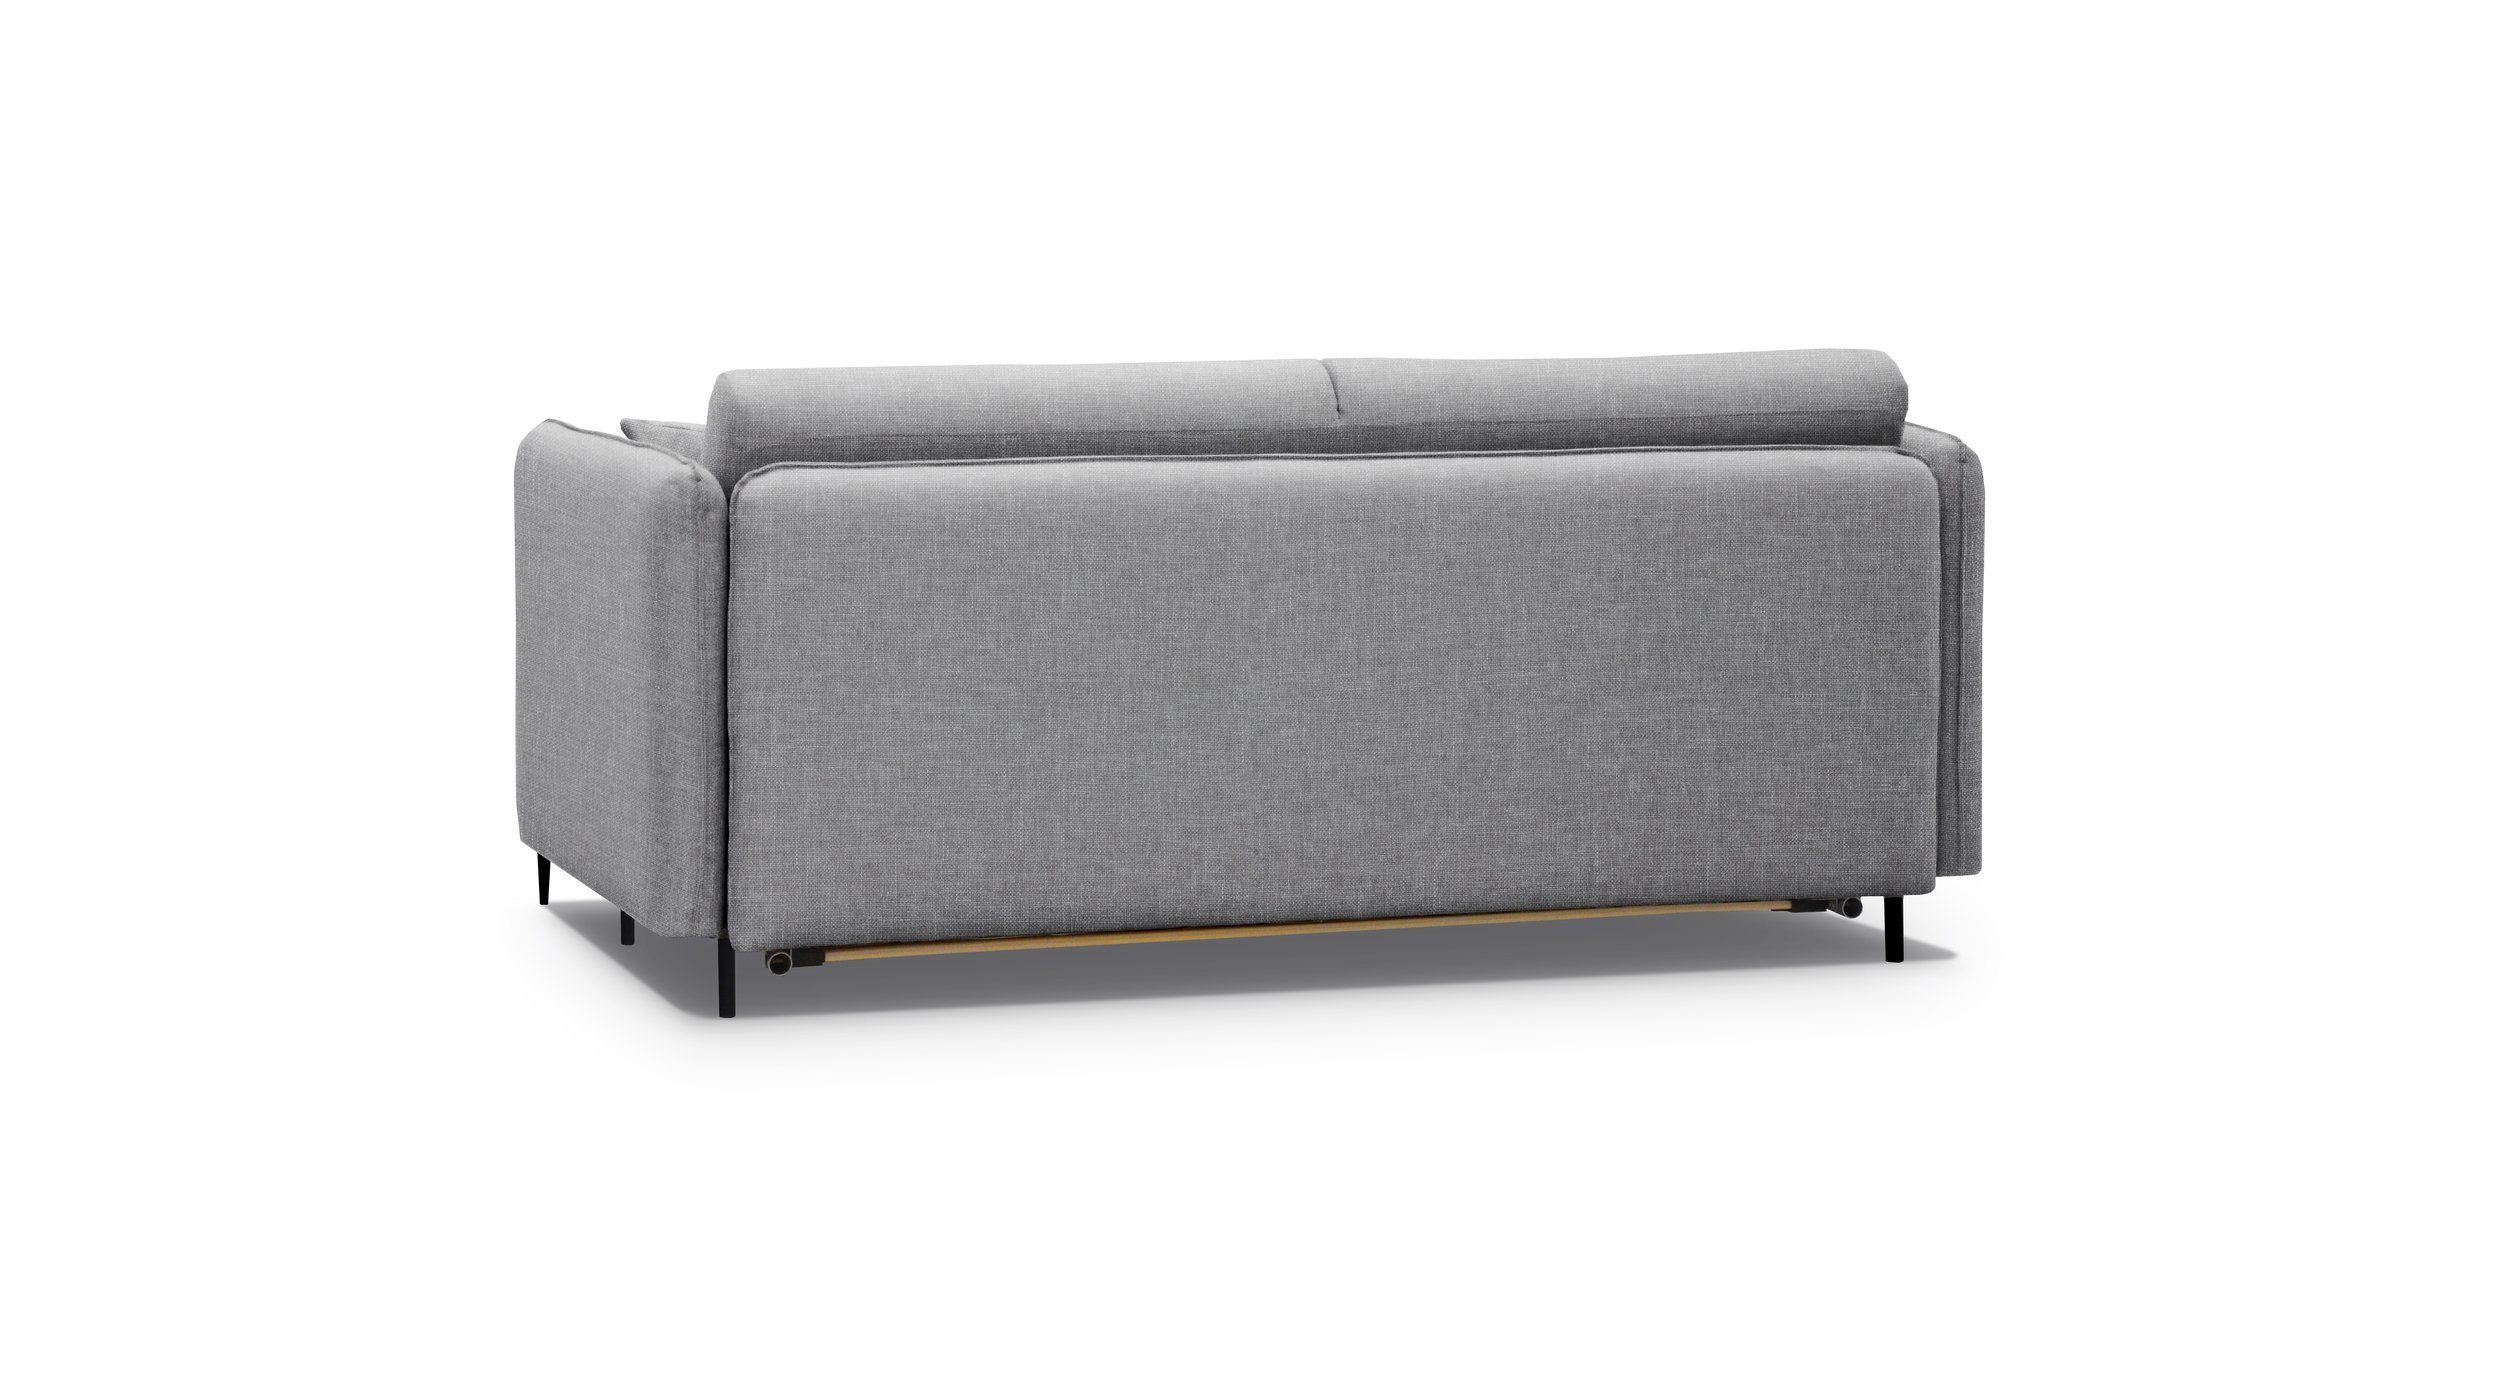 stellbar, Metall 3-Sitzer 2-Sitzer, Stylefy Sofa, Modern frei Raum Arnold, Bettfunktion, im Design, mit